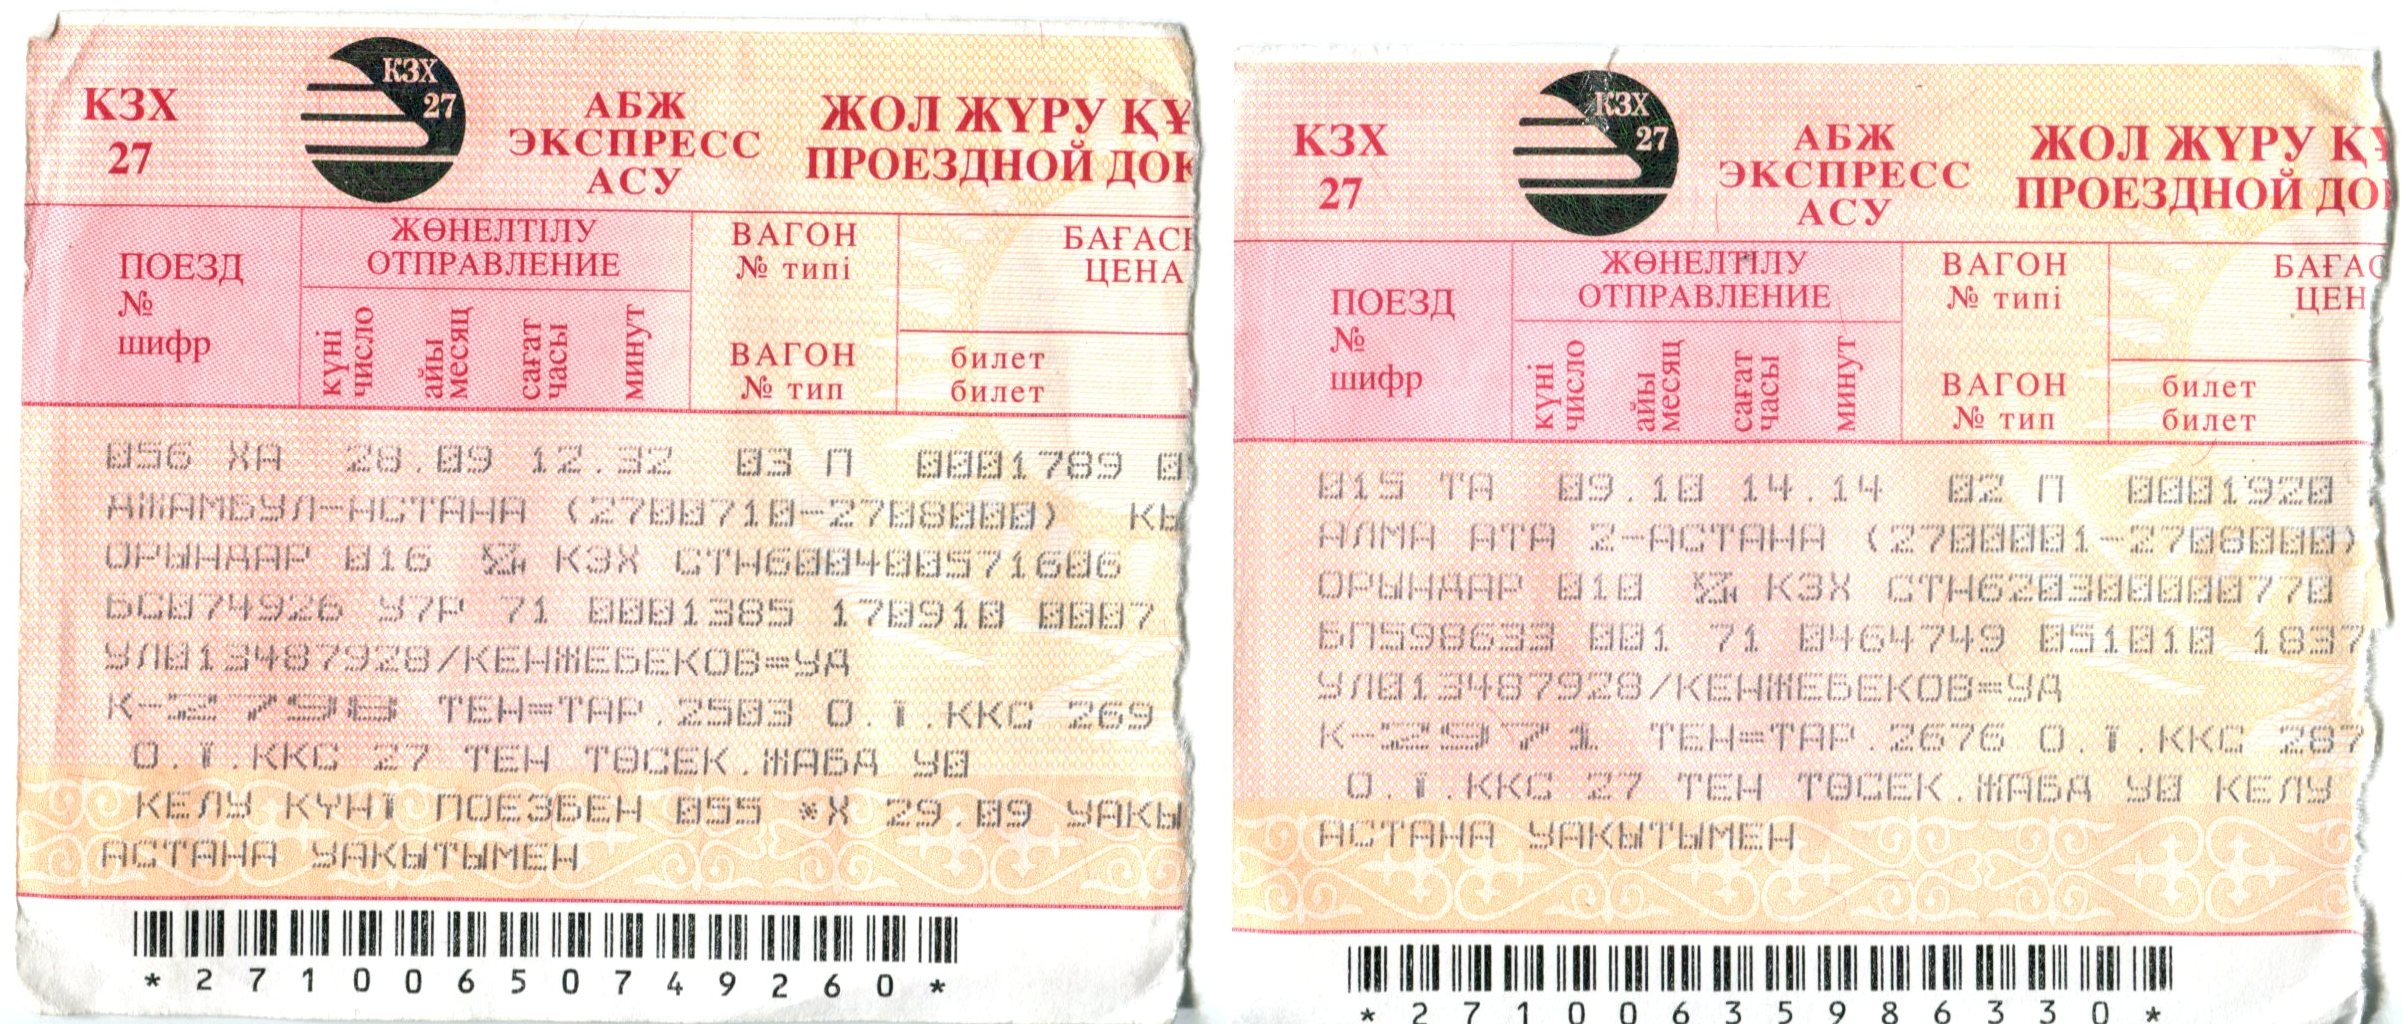 Билеты на поезд кореновск. Билет на поезд. Билет АСУ экспресс. Бланк билета РЖД. Советский билет на поезд.